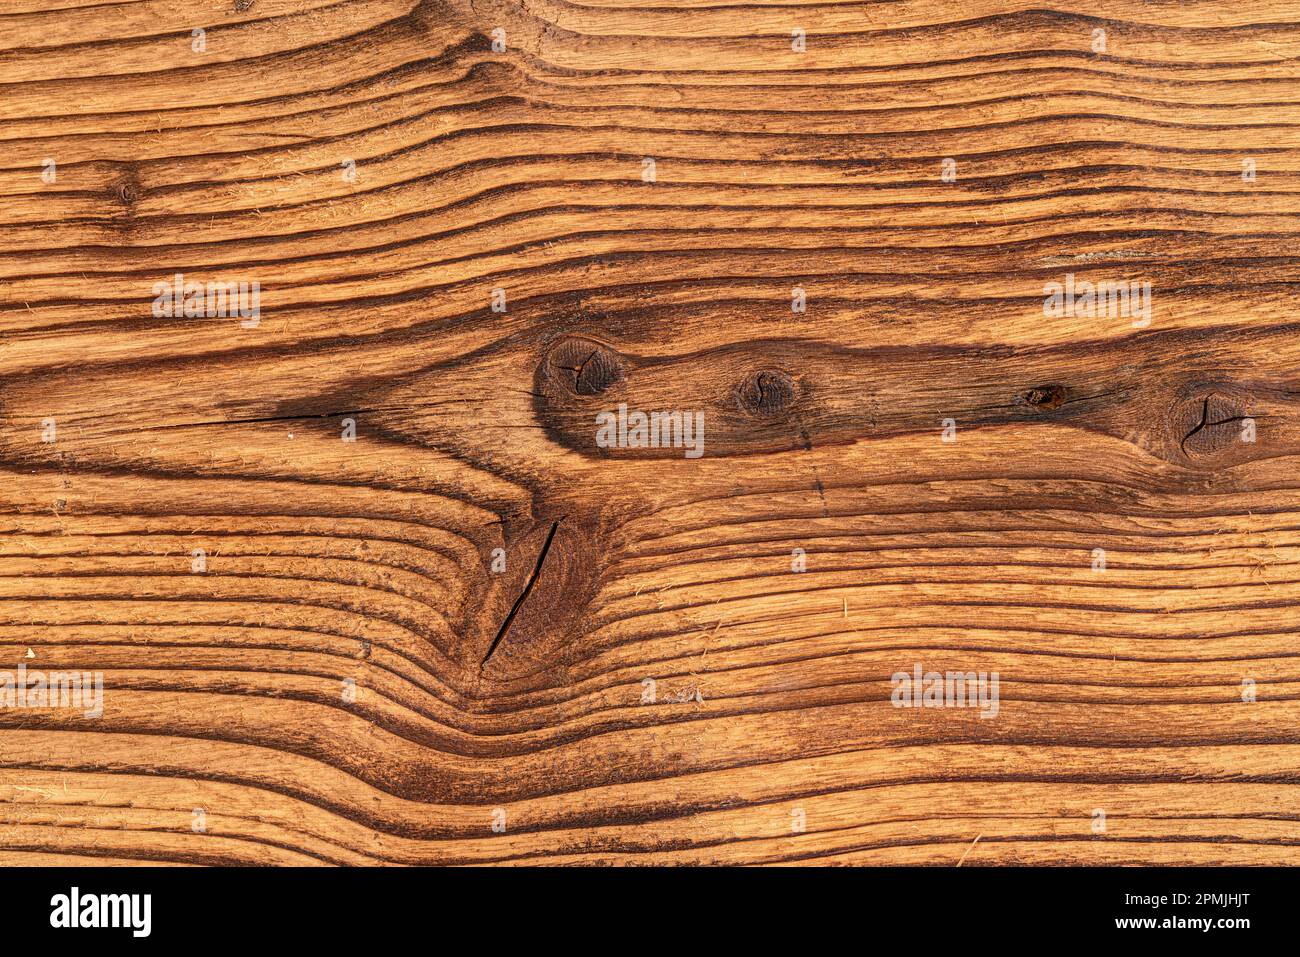 Détails sur les planches en bois, grain de bois rehaussé par la combustion, vue d'en haut Banque D'Images